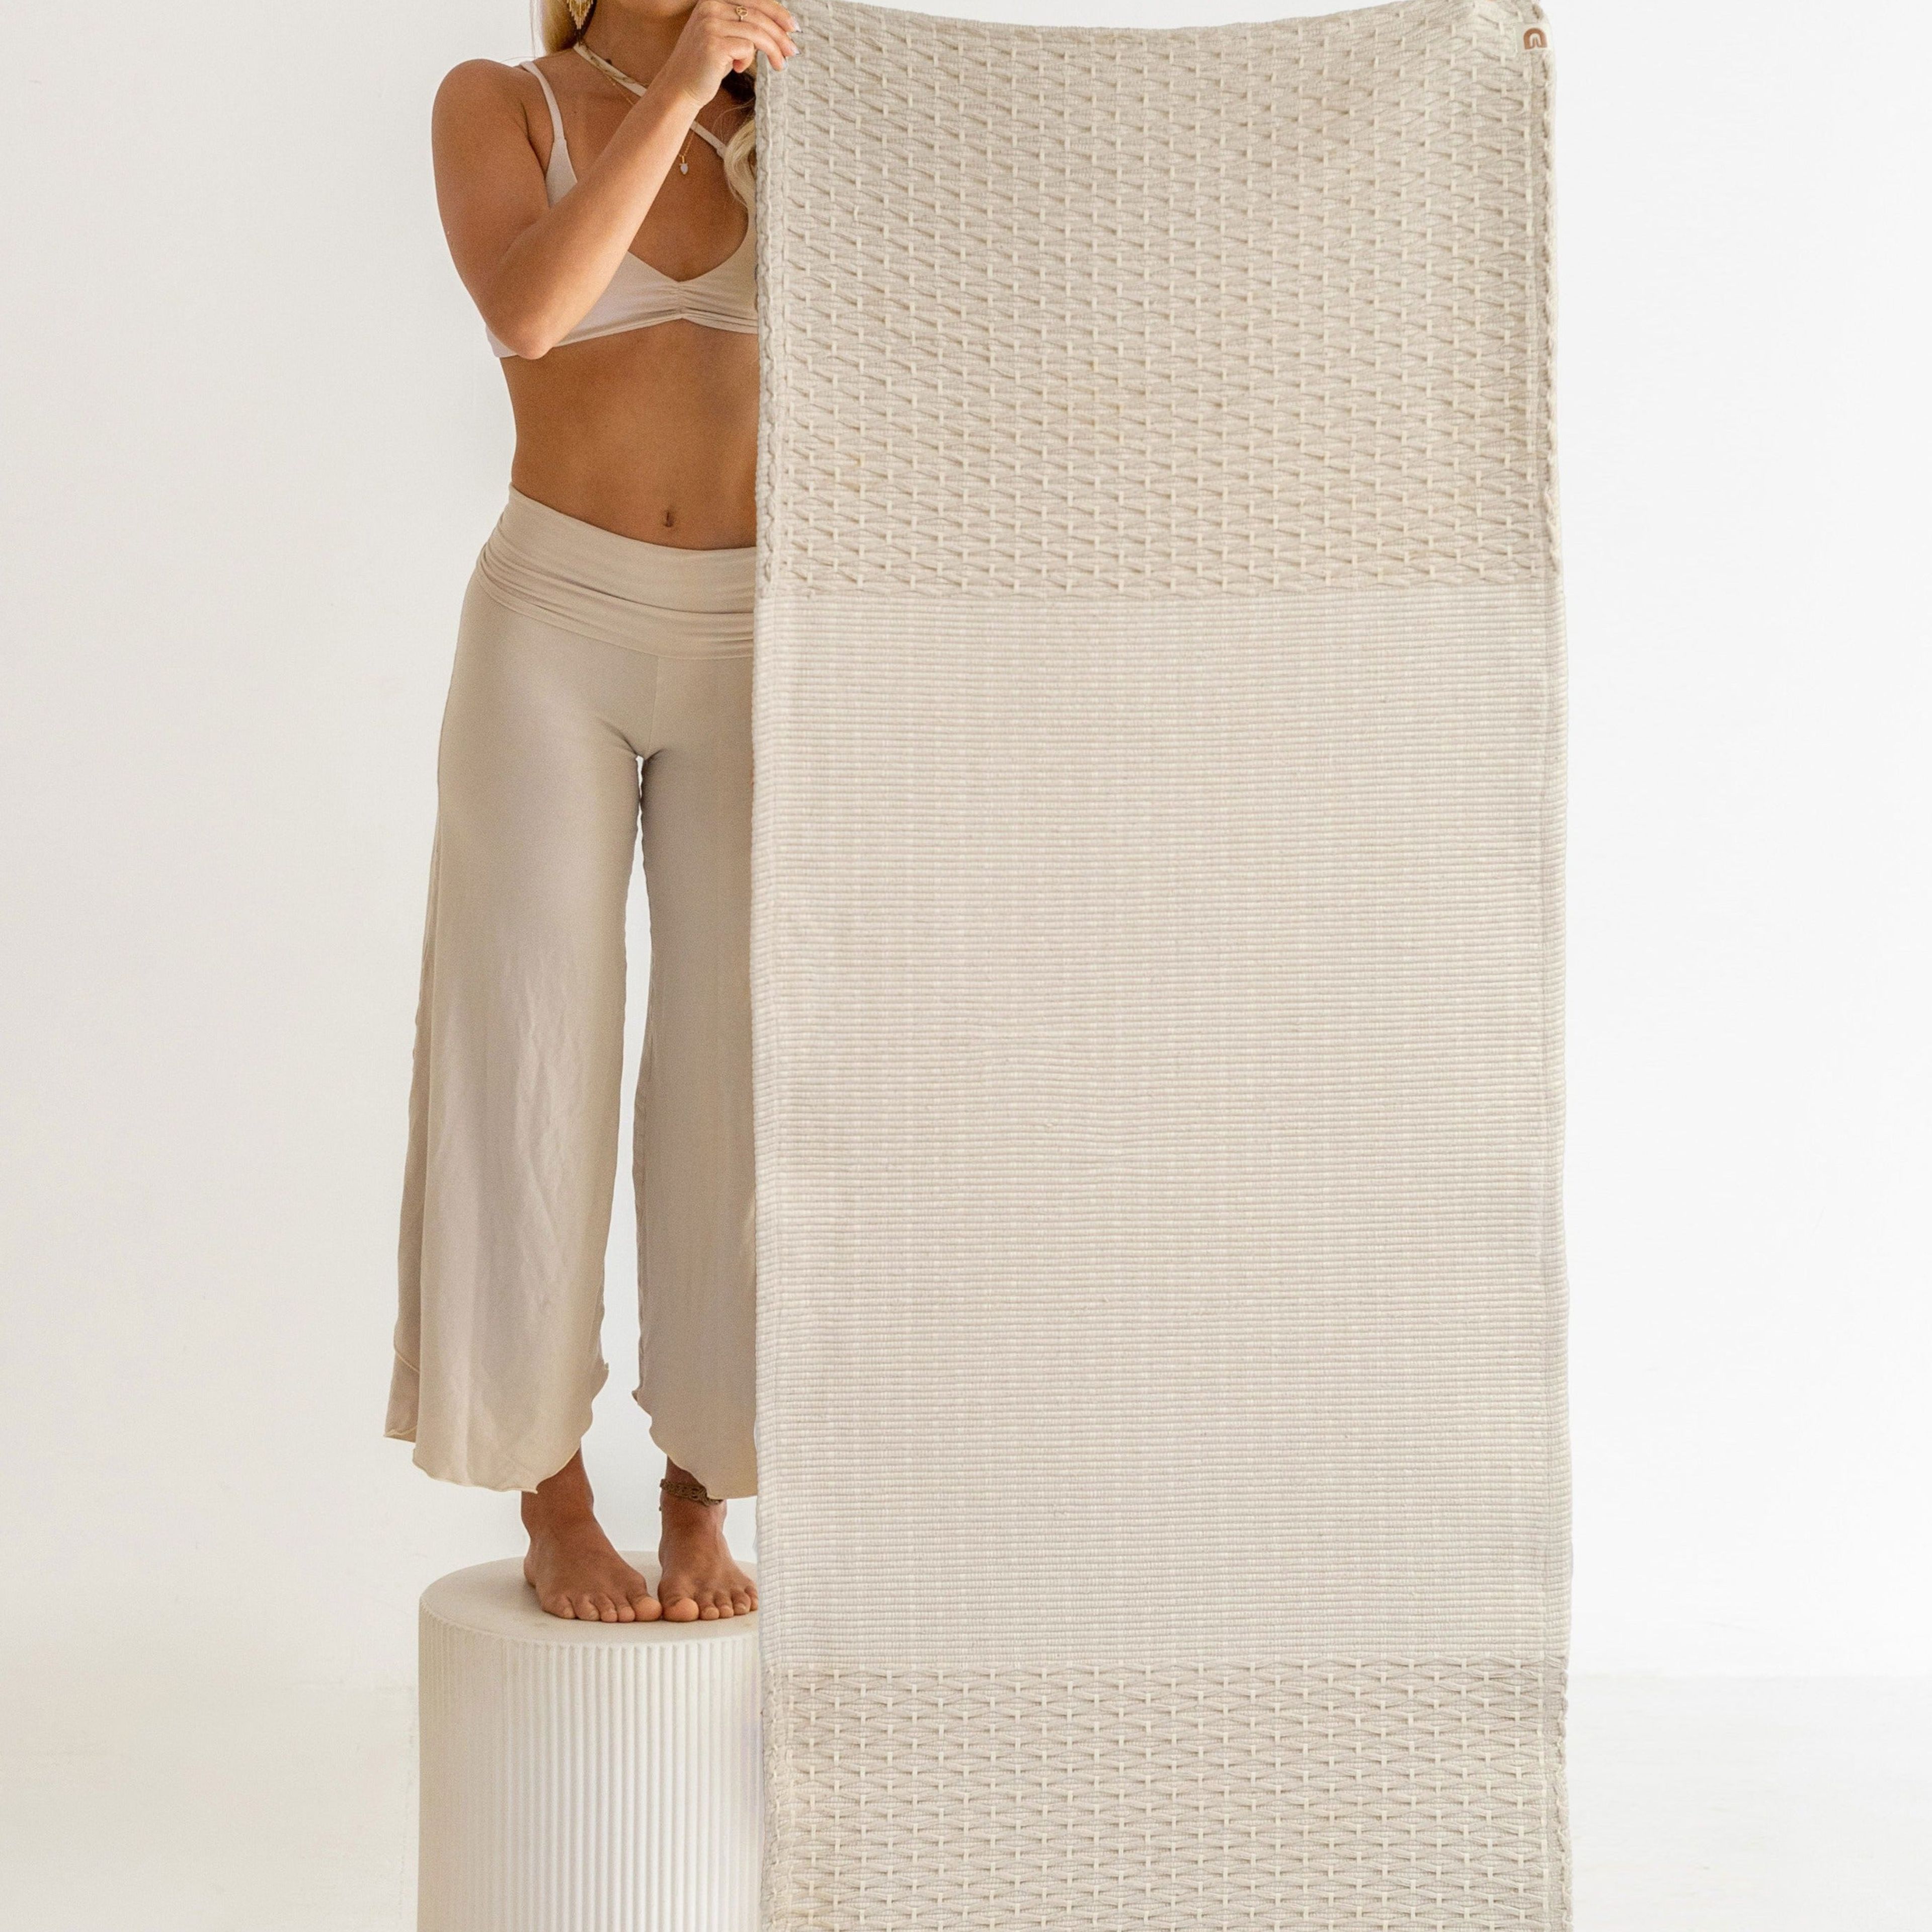 Diamond Yoga Mat - Cream 7mm - Organic Cotton